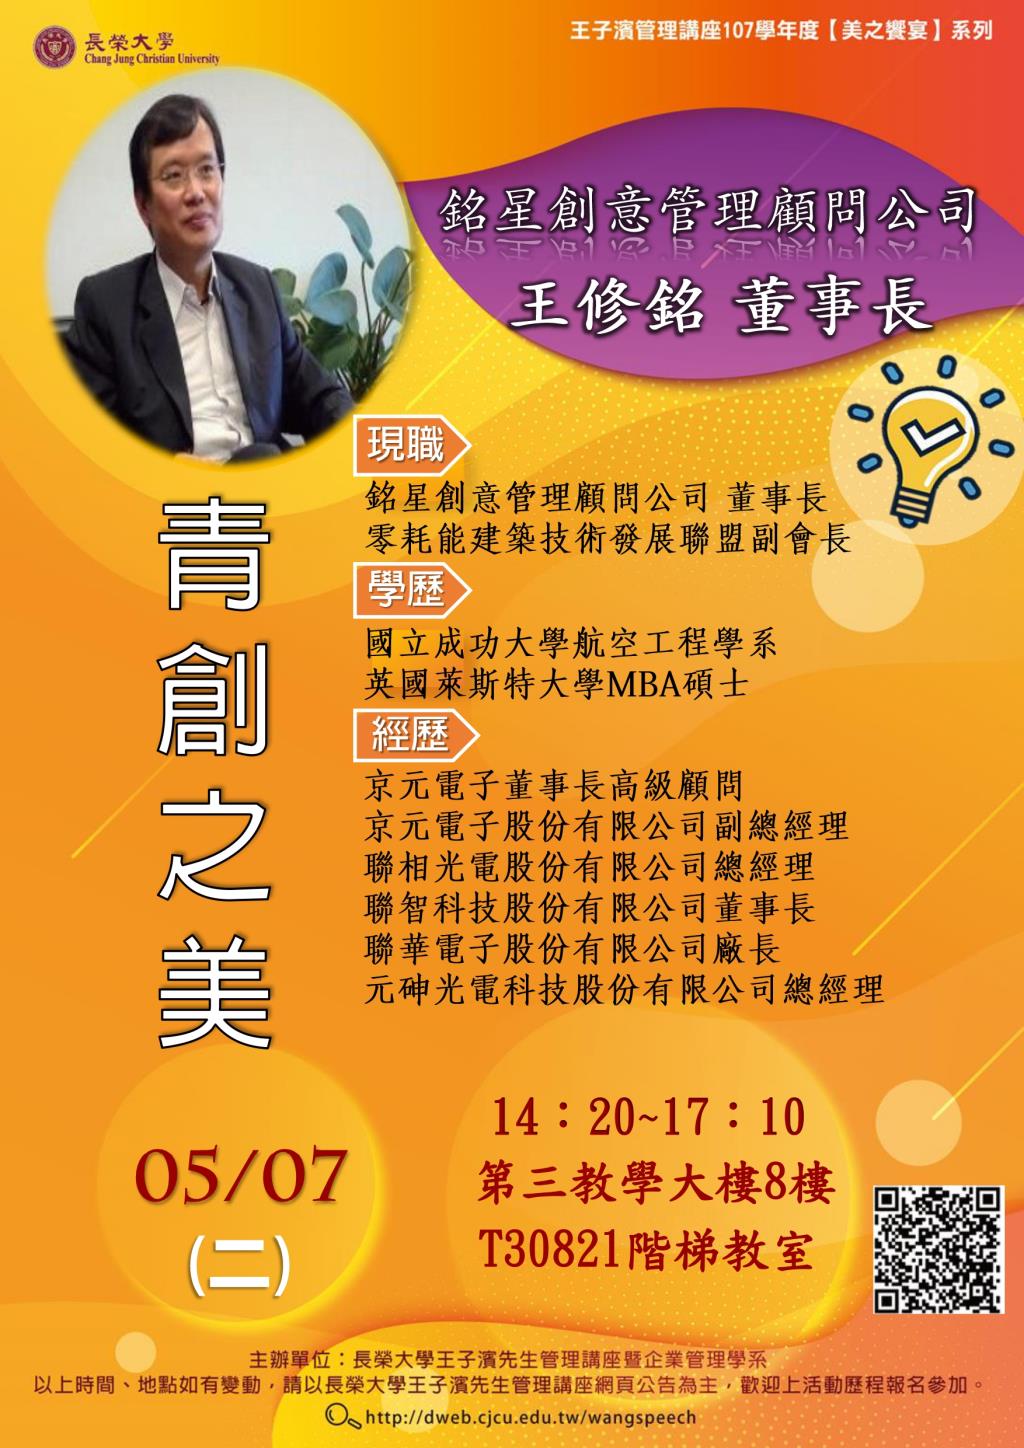 敬邀參加本週二下午(05/07)王子濱先生管理講座---銘星創意管理顧問公司 王修銘董事長